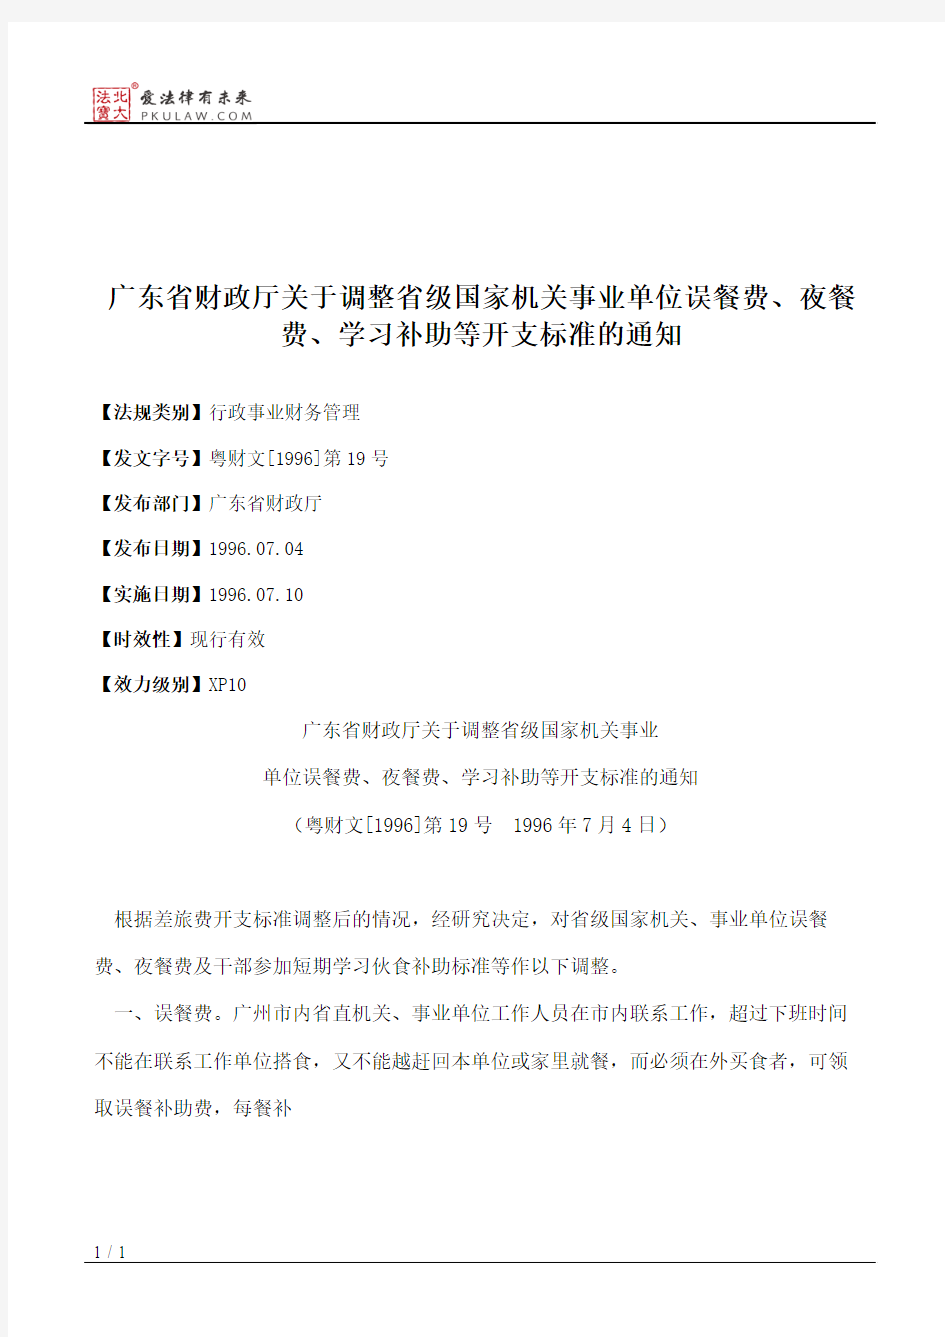 广东省财政厅关于调整省级国家机关事业单位误餐费、夜餐费、学习